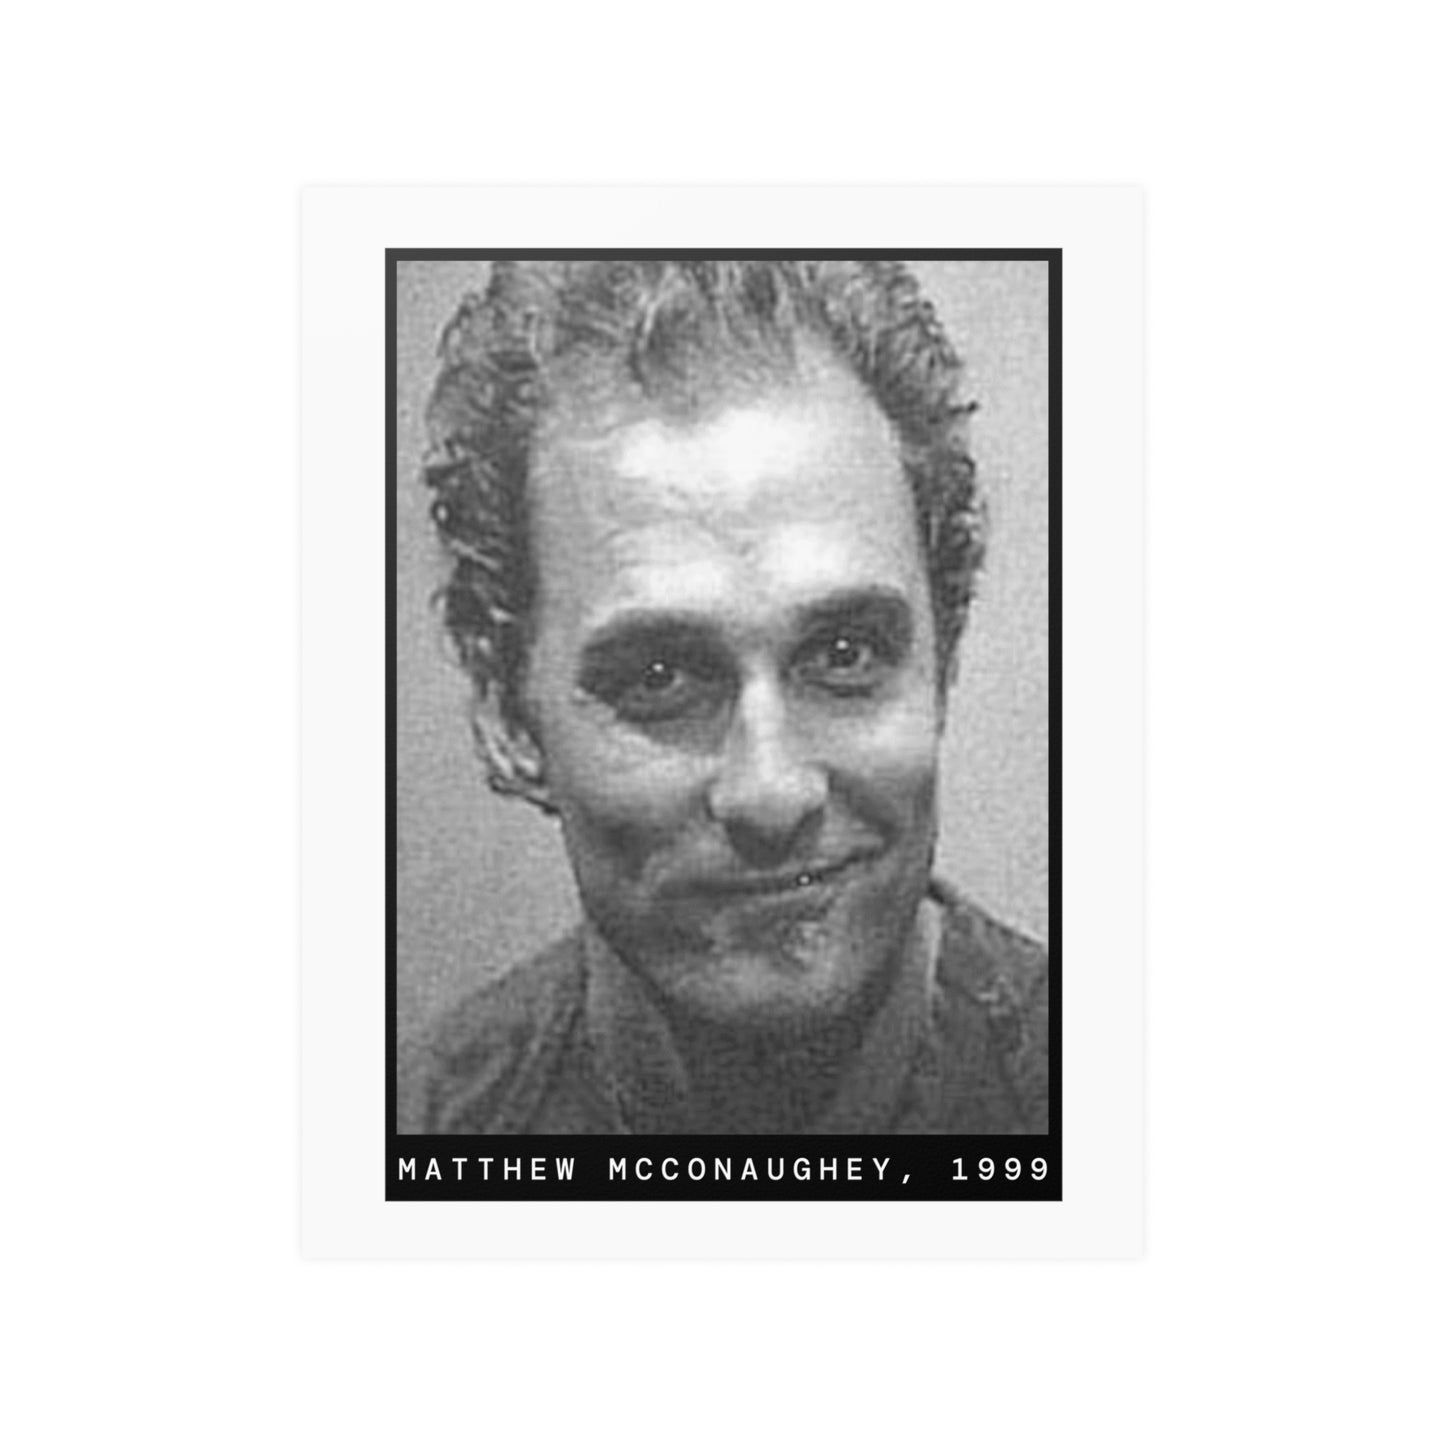 Matthew McConaughey, 1999 Actor Mugshot Poster